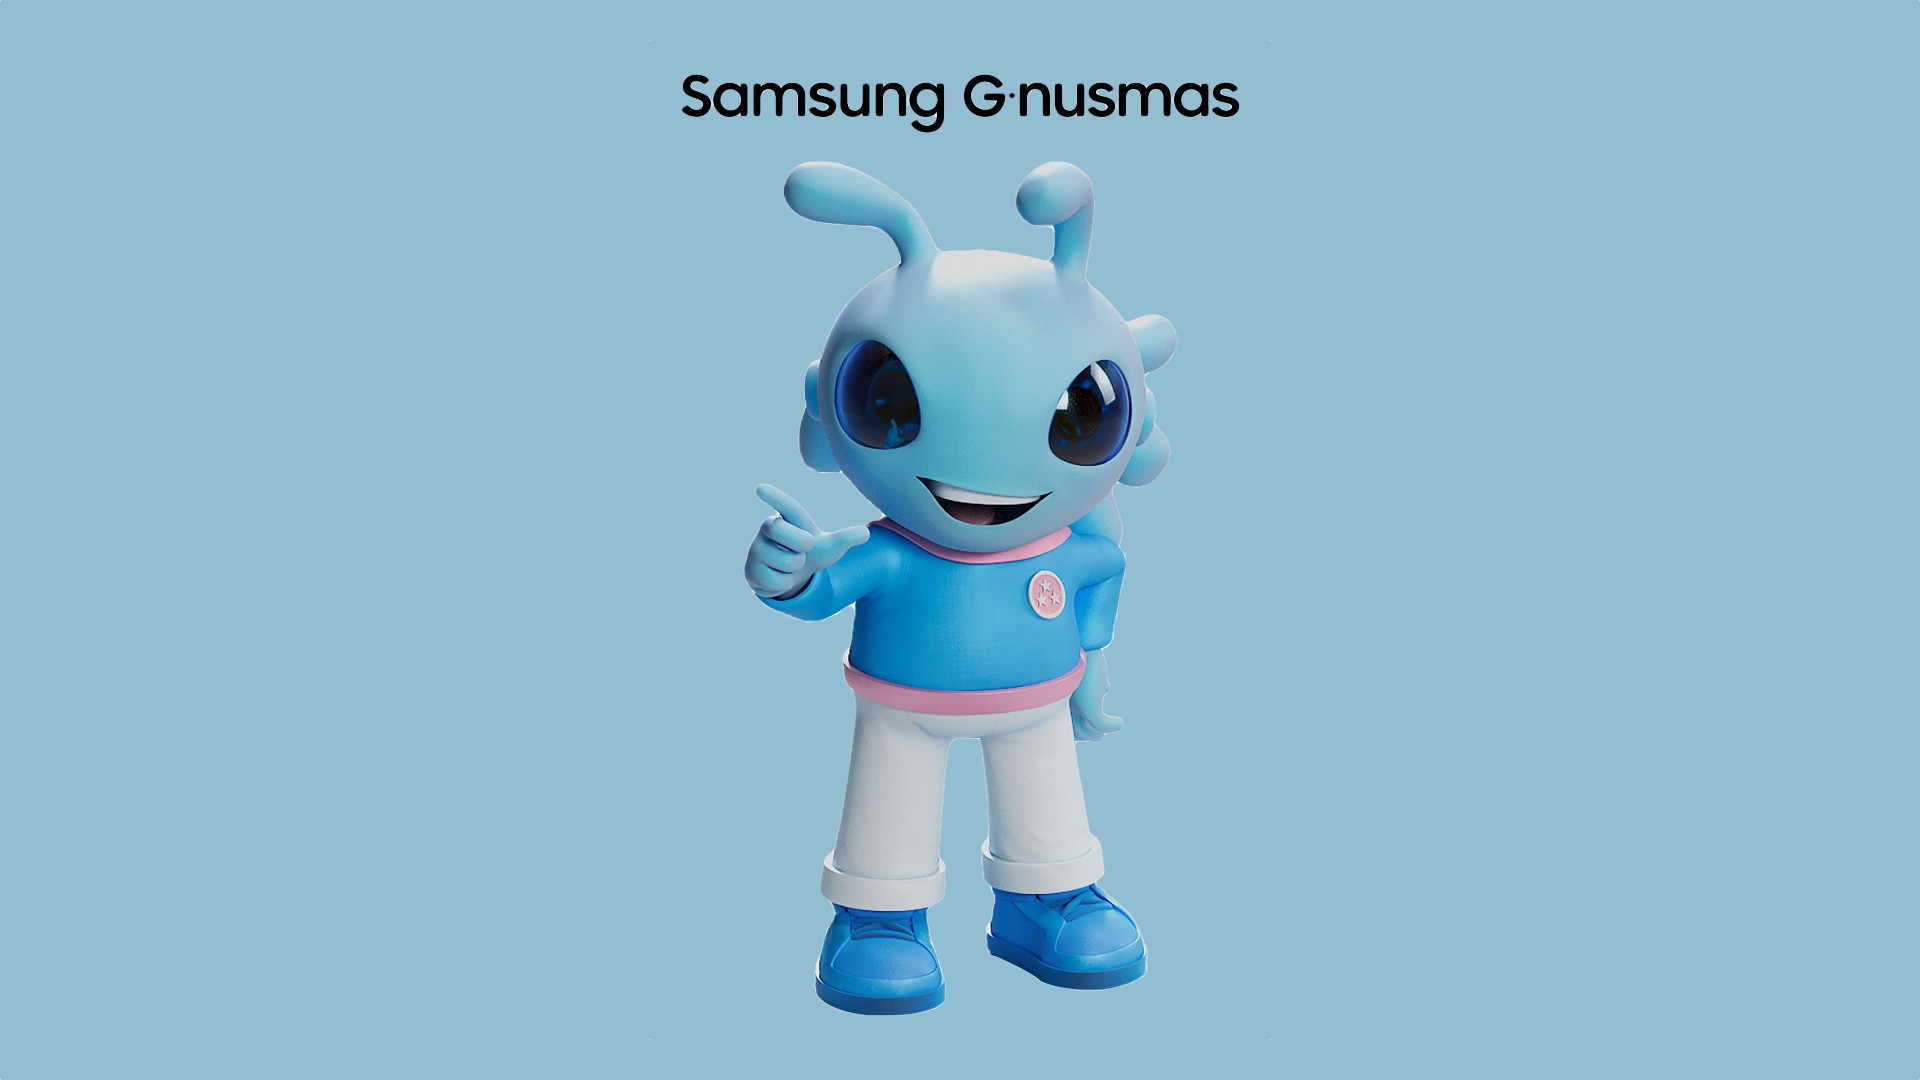 Conoce a Gnusmas, la nueva mascota oficial de Samsung